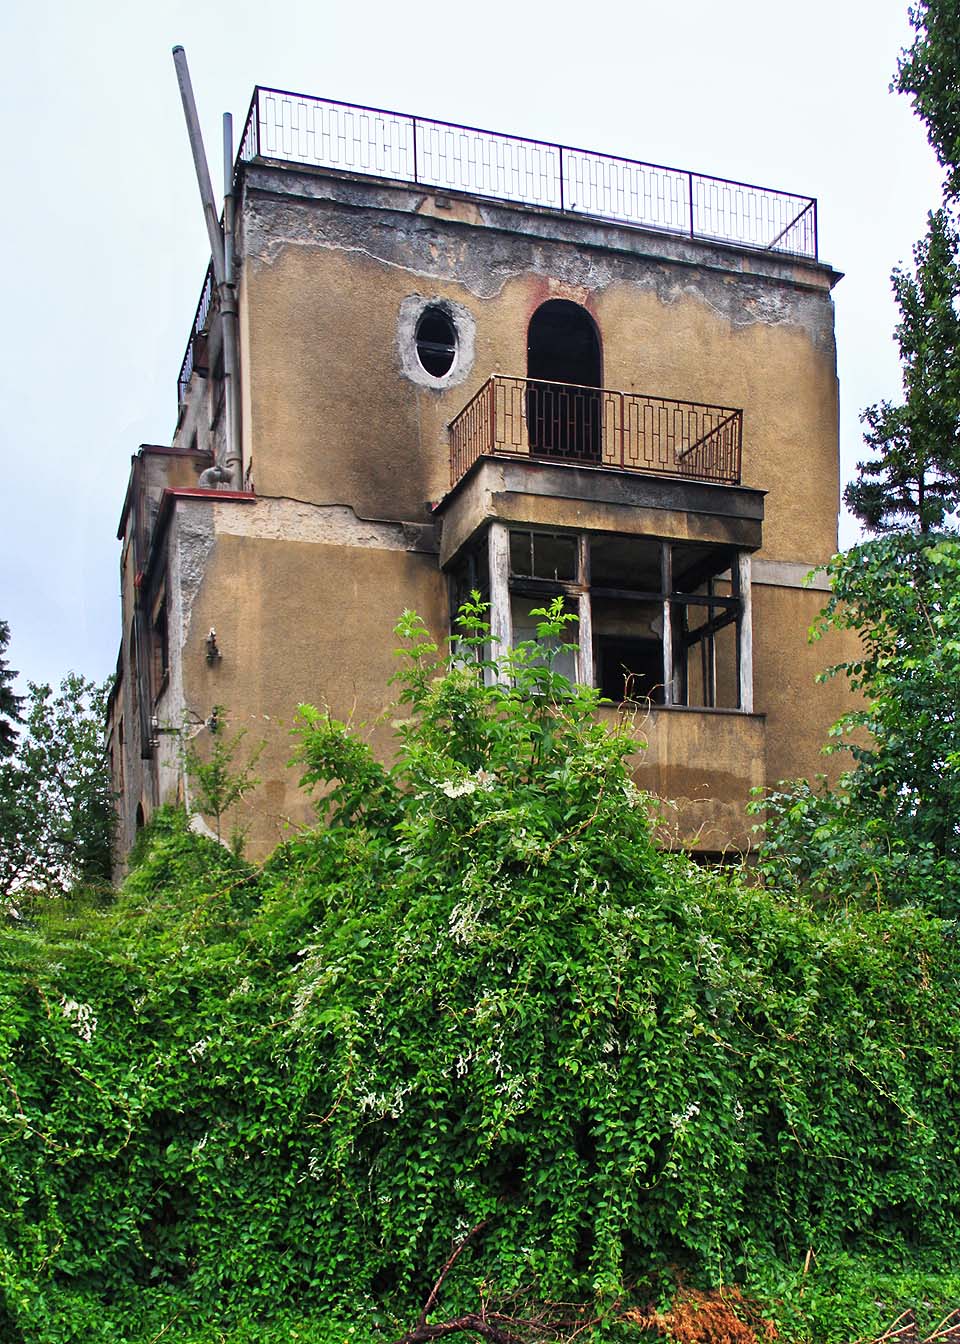 Posledních deset let svého života patřila Prokopova vila na Barrandově ke stavbám, které spíše než obdiv nahání hrůzu.